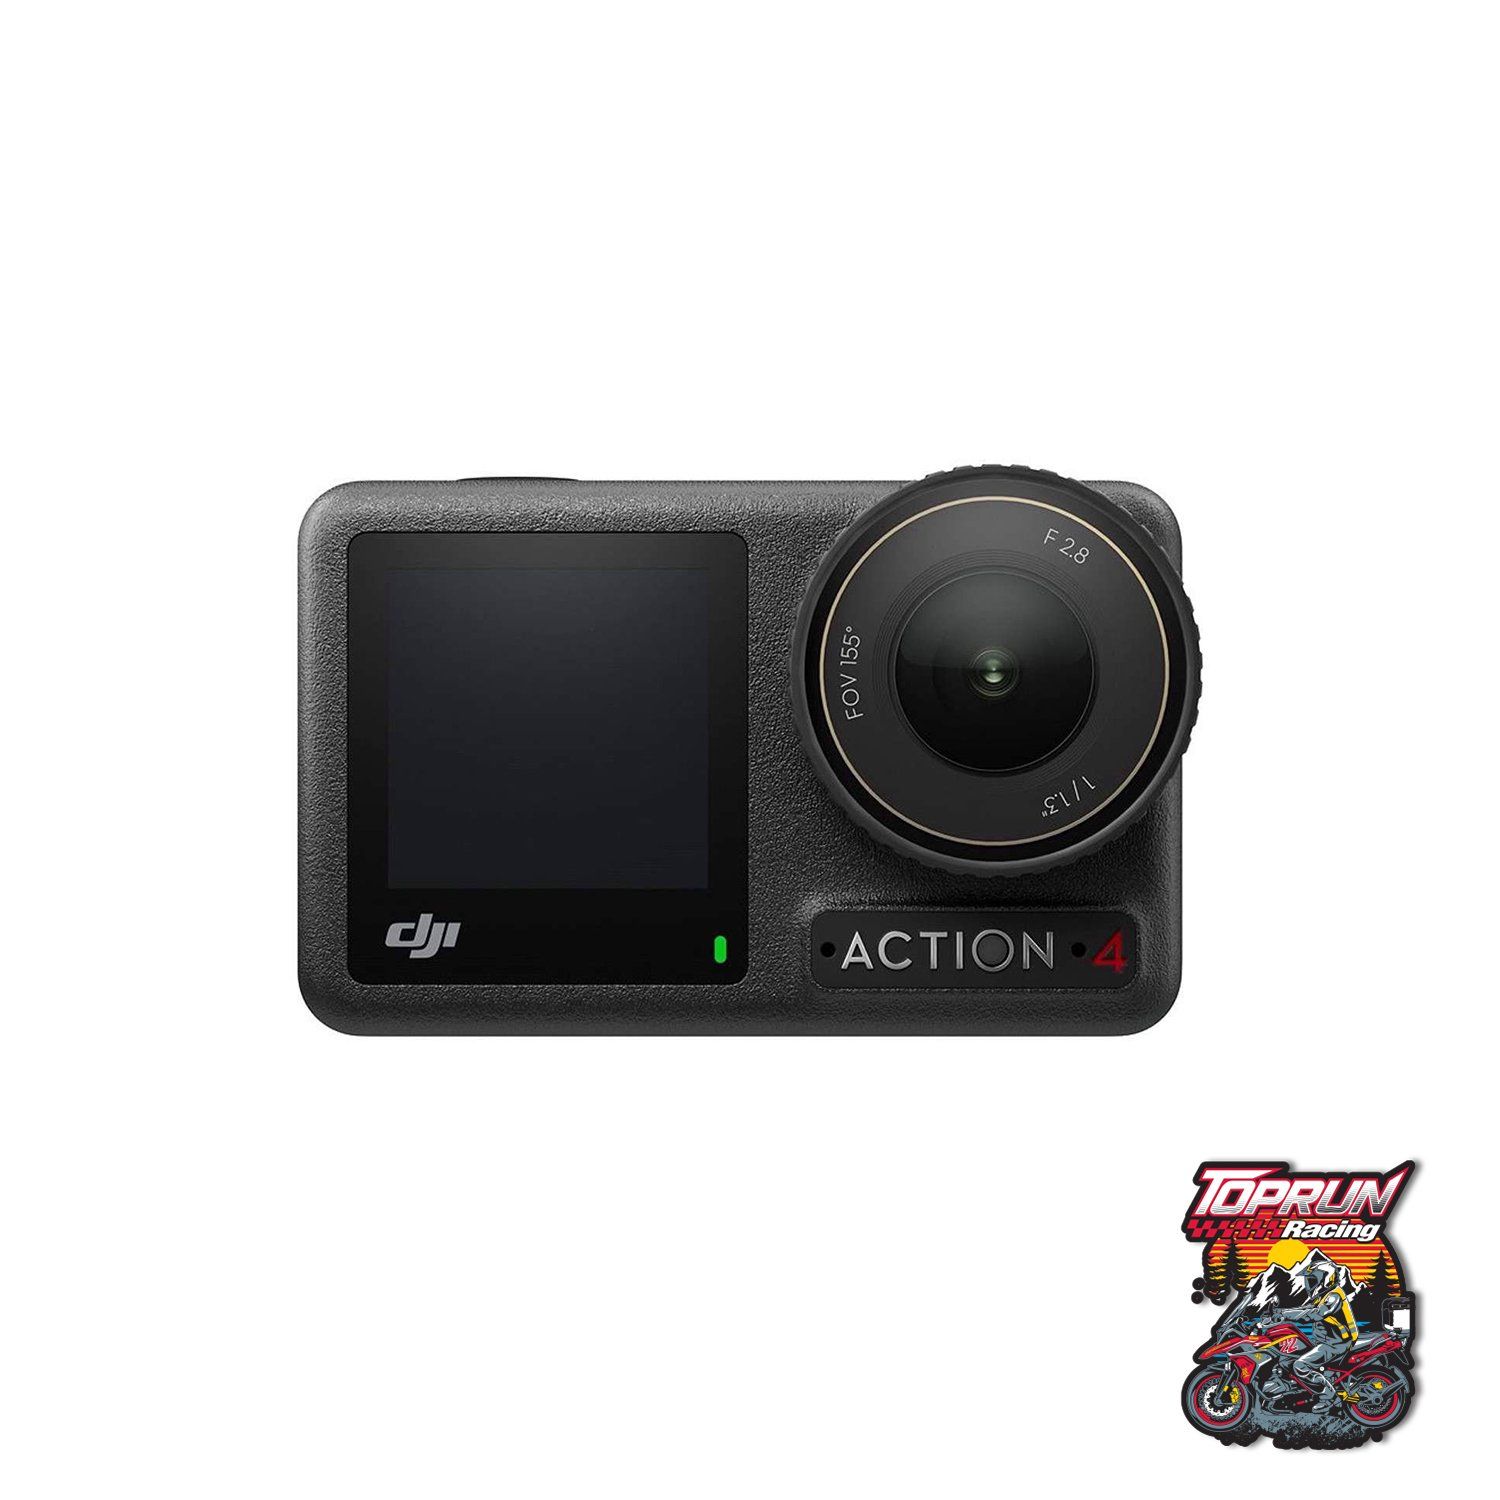  Camera Hành Động DJI Osmo Action 4 